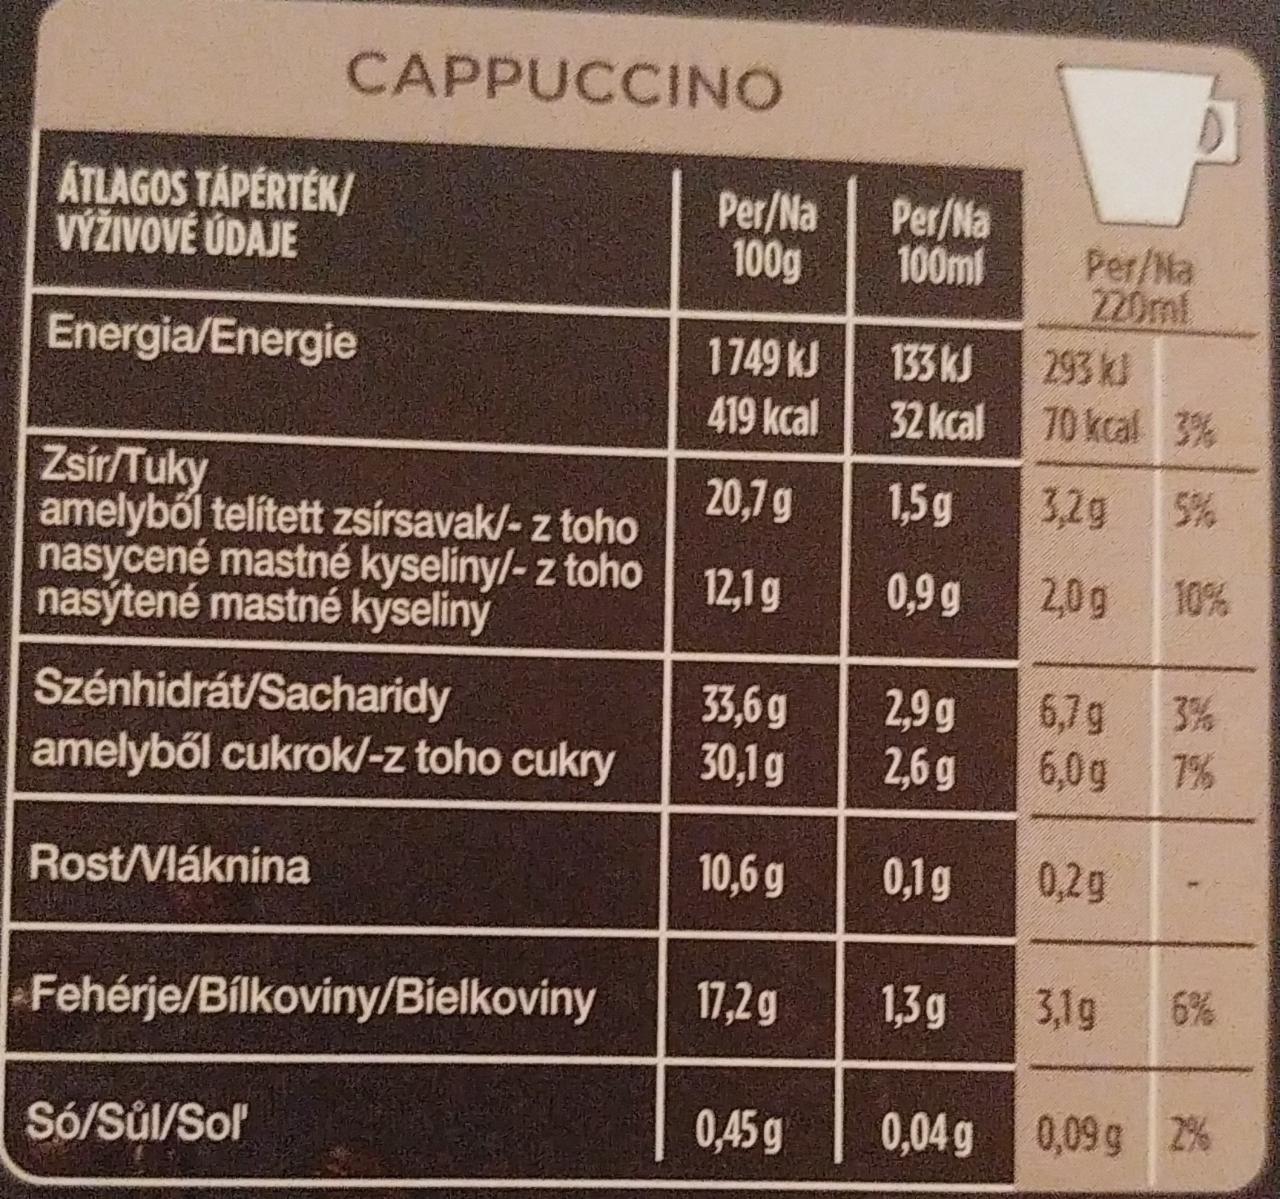 Kenco cappuccino Tassimo - kalorie, kJ a nutriční hodnoty